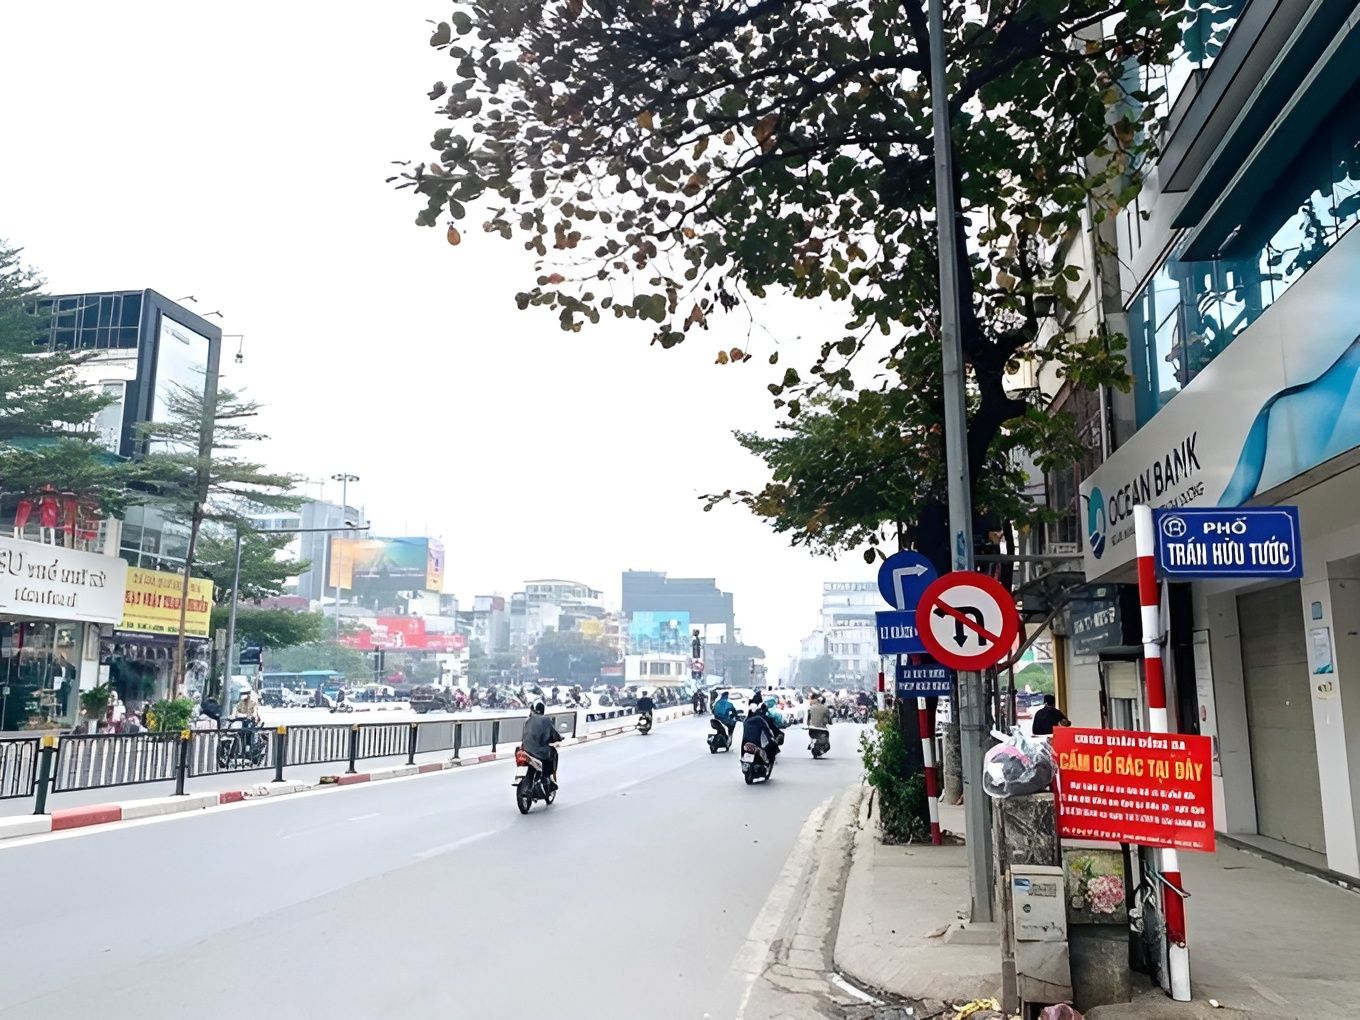 Giá bán nhà riêng 2PN tại phường Nam Đồng, quận Đống Đa đang bán bao nhiêu?